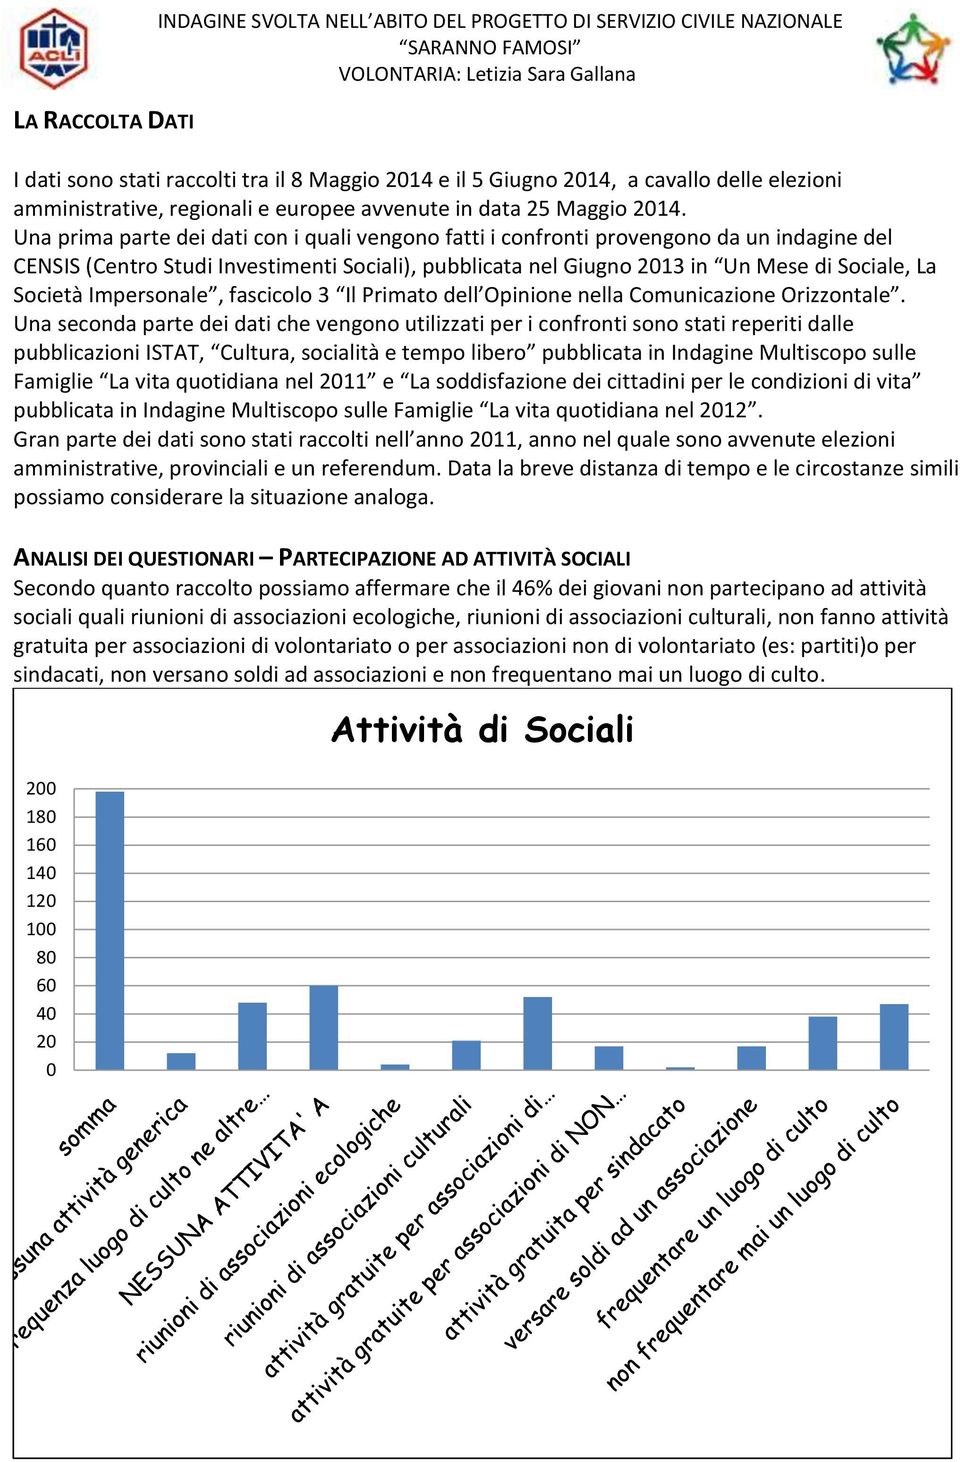 Una prima parte dei dati con i quali vengono fatti i confronti provengono da un indagine del CENSIS (Centro Studi Investimenti Sociali), pubblicata nel Giugno 2013 in Un Mese di Sociale, La Società